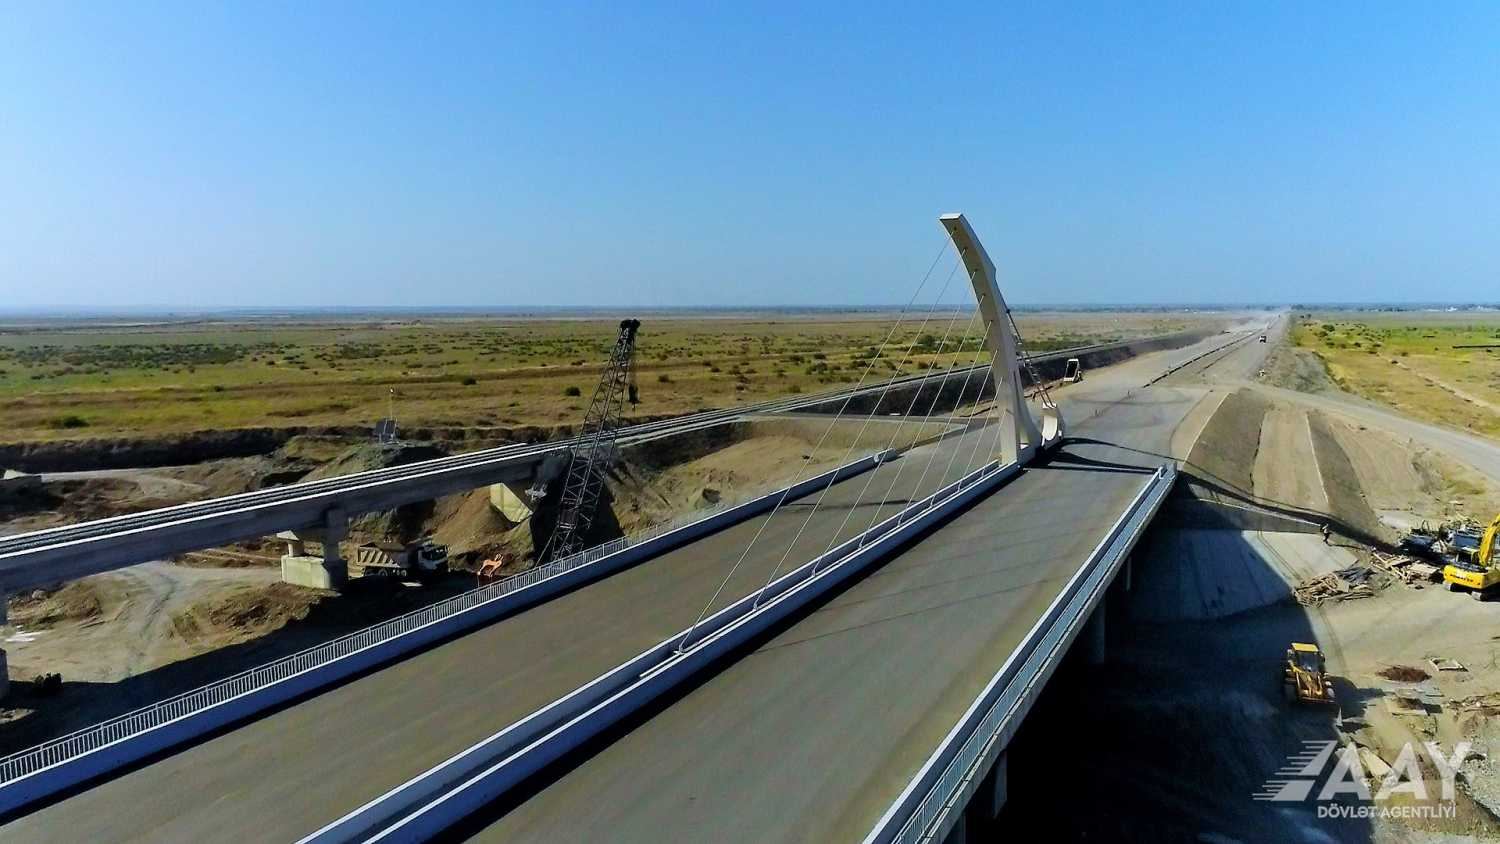 Строительство автодороги Барда-Агдам продолжается ускоренными темпами (ФОТО/ВИДЕО)